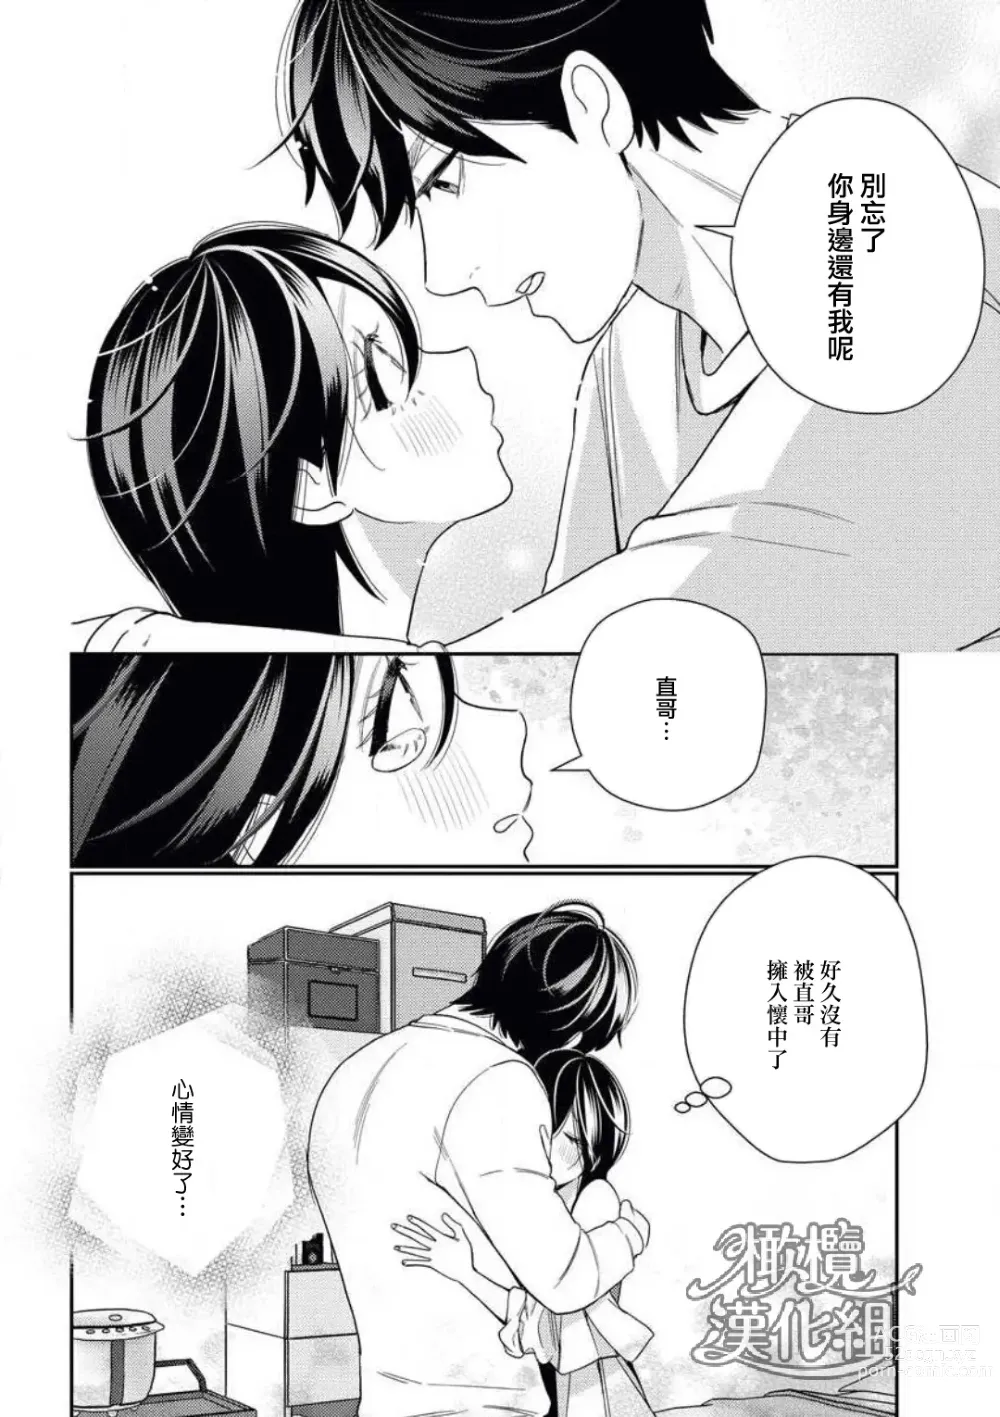 Page 24 of manga 青梅竹马难以攻陷被小黄话（※正当工作需求）玩弄一番